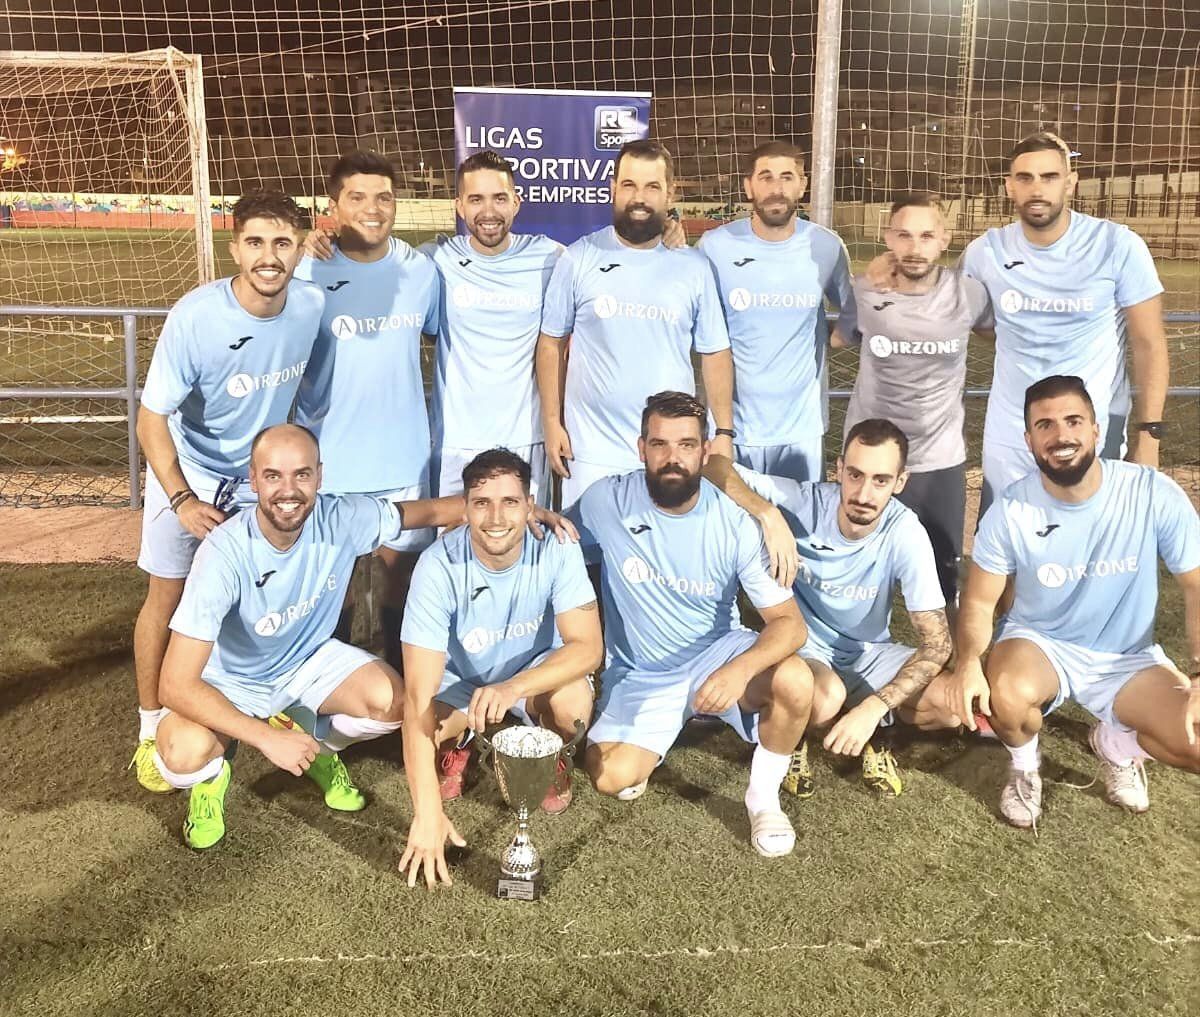 ALTRA campeón de la 35 edición de la Liga de Fútbol 7 RC Interempresas de Primavera 2022 en Malaga 